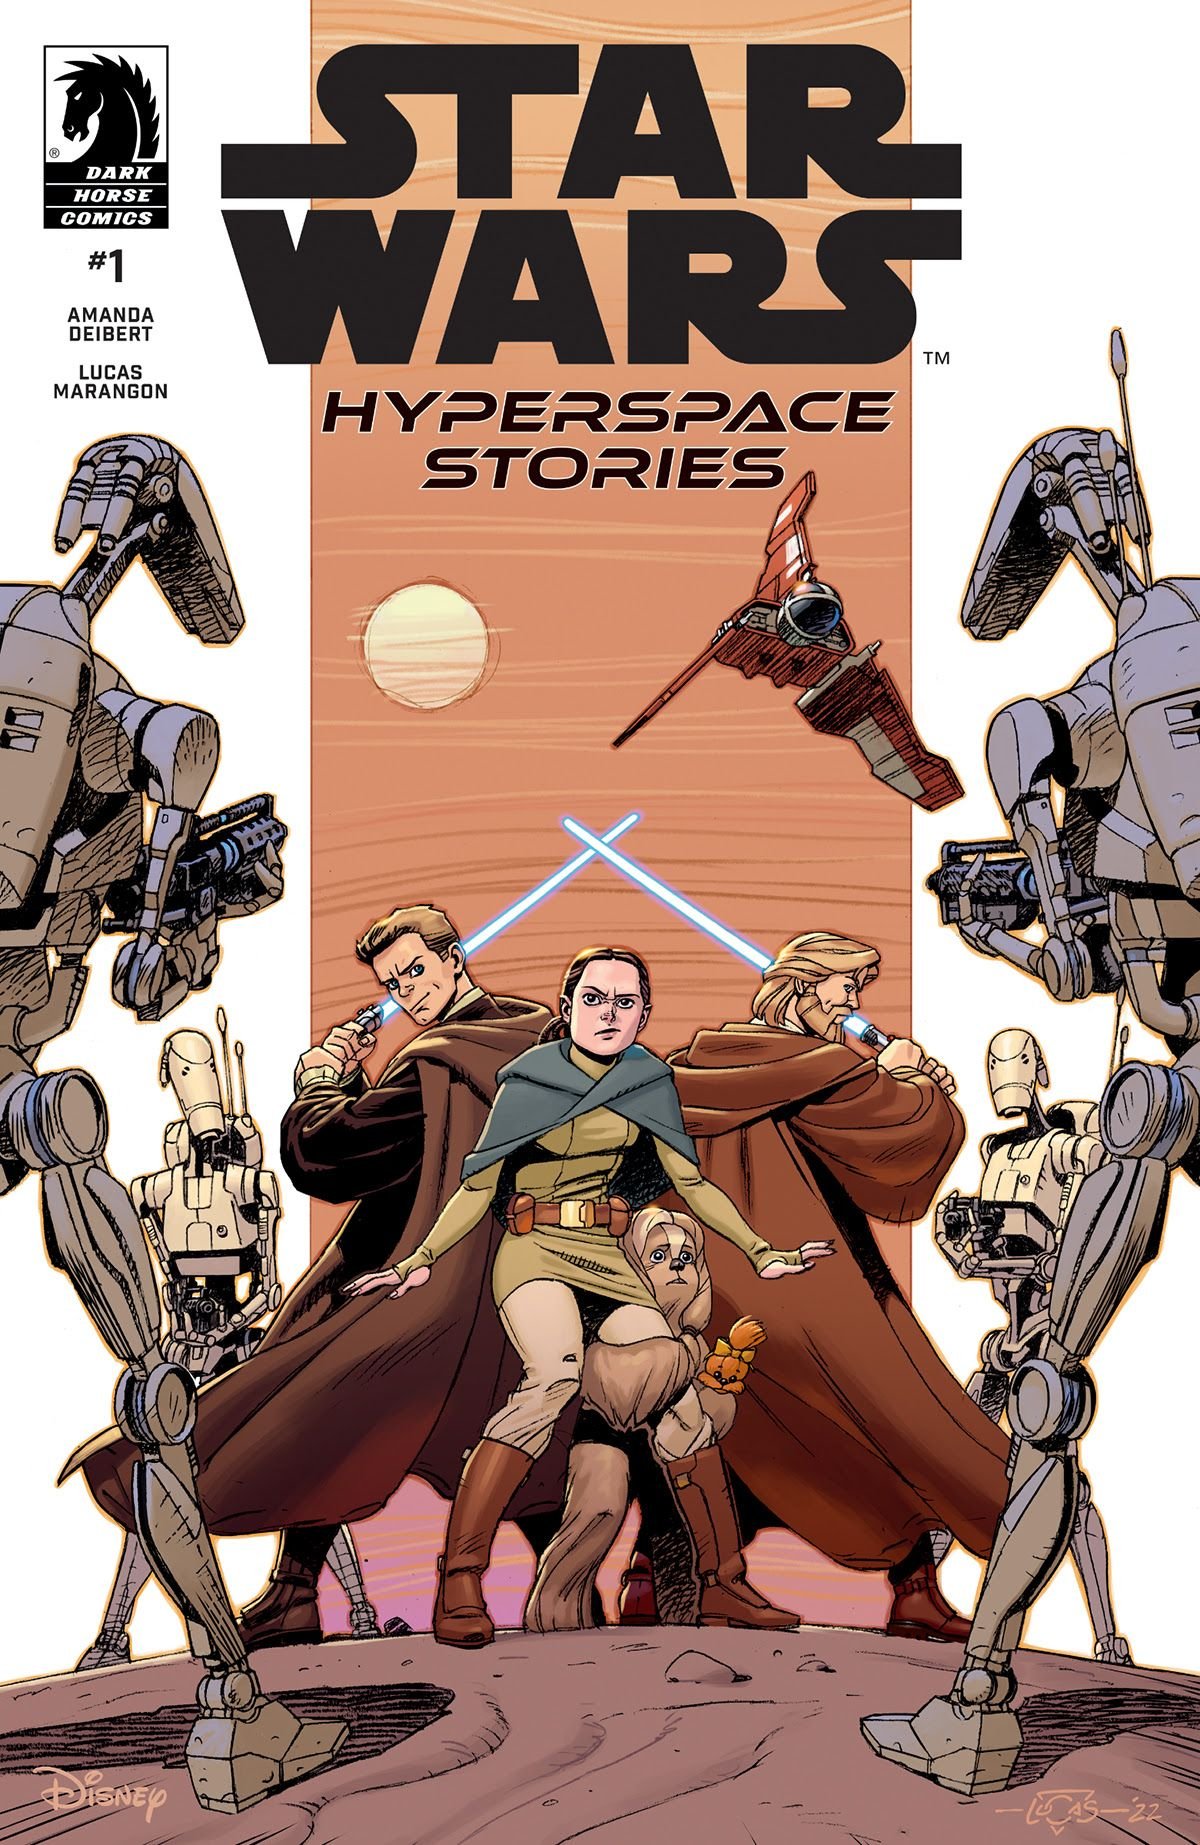 Cover di Star Wars: Hyperspace Stories 1 di Lucas Marangon